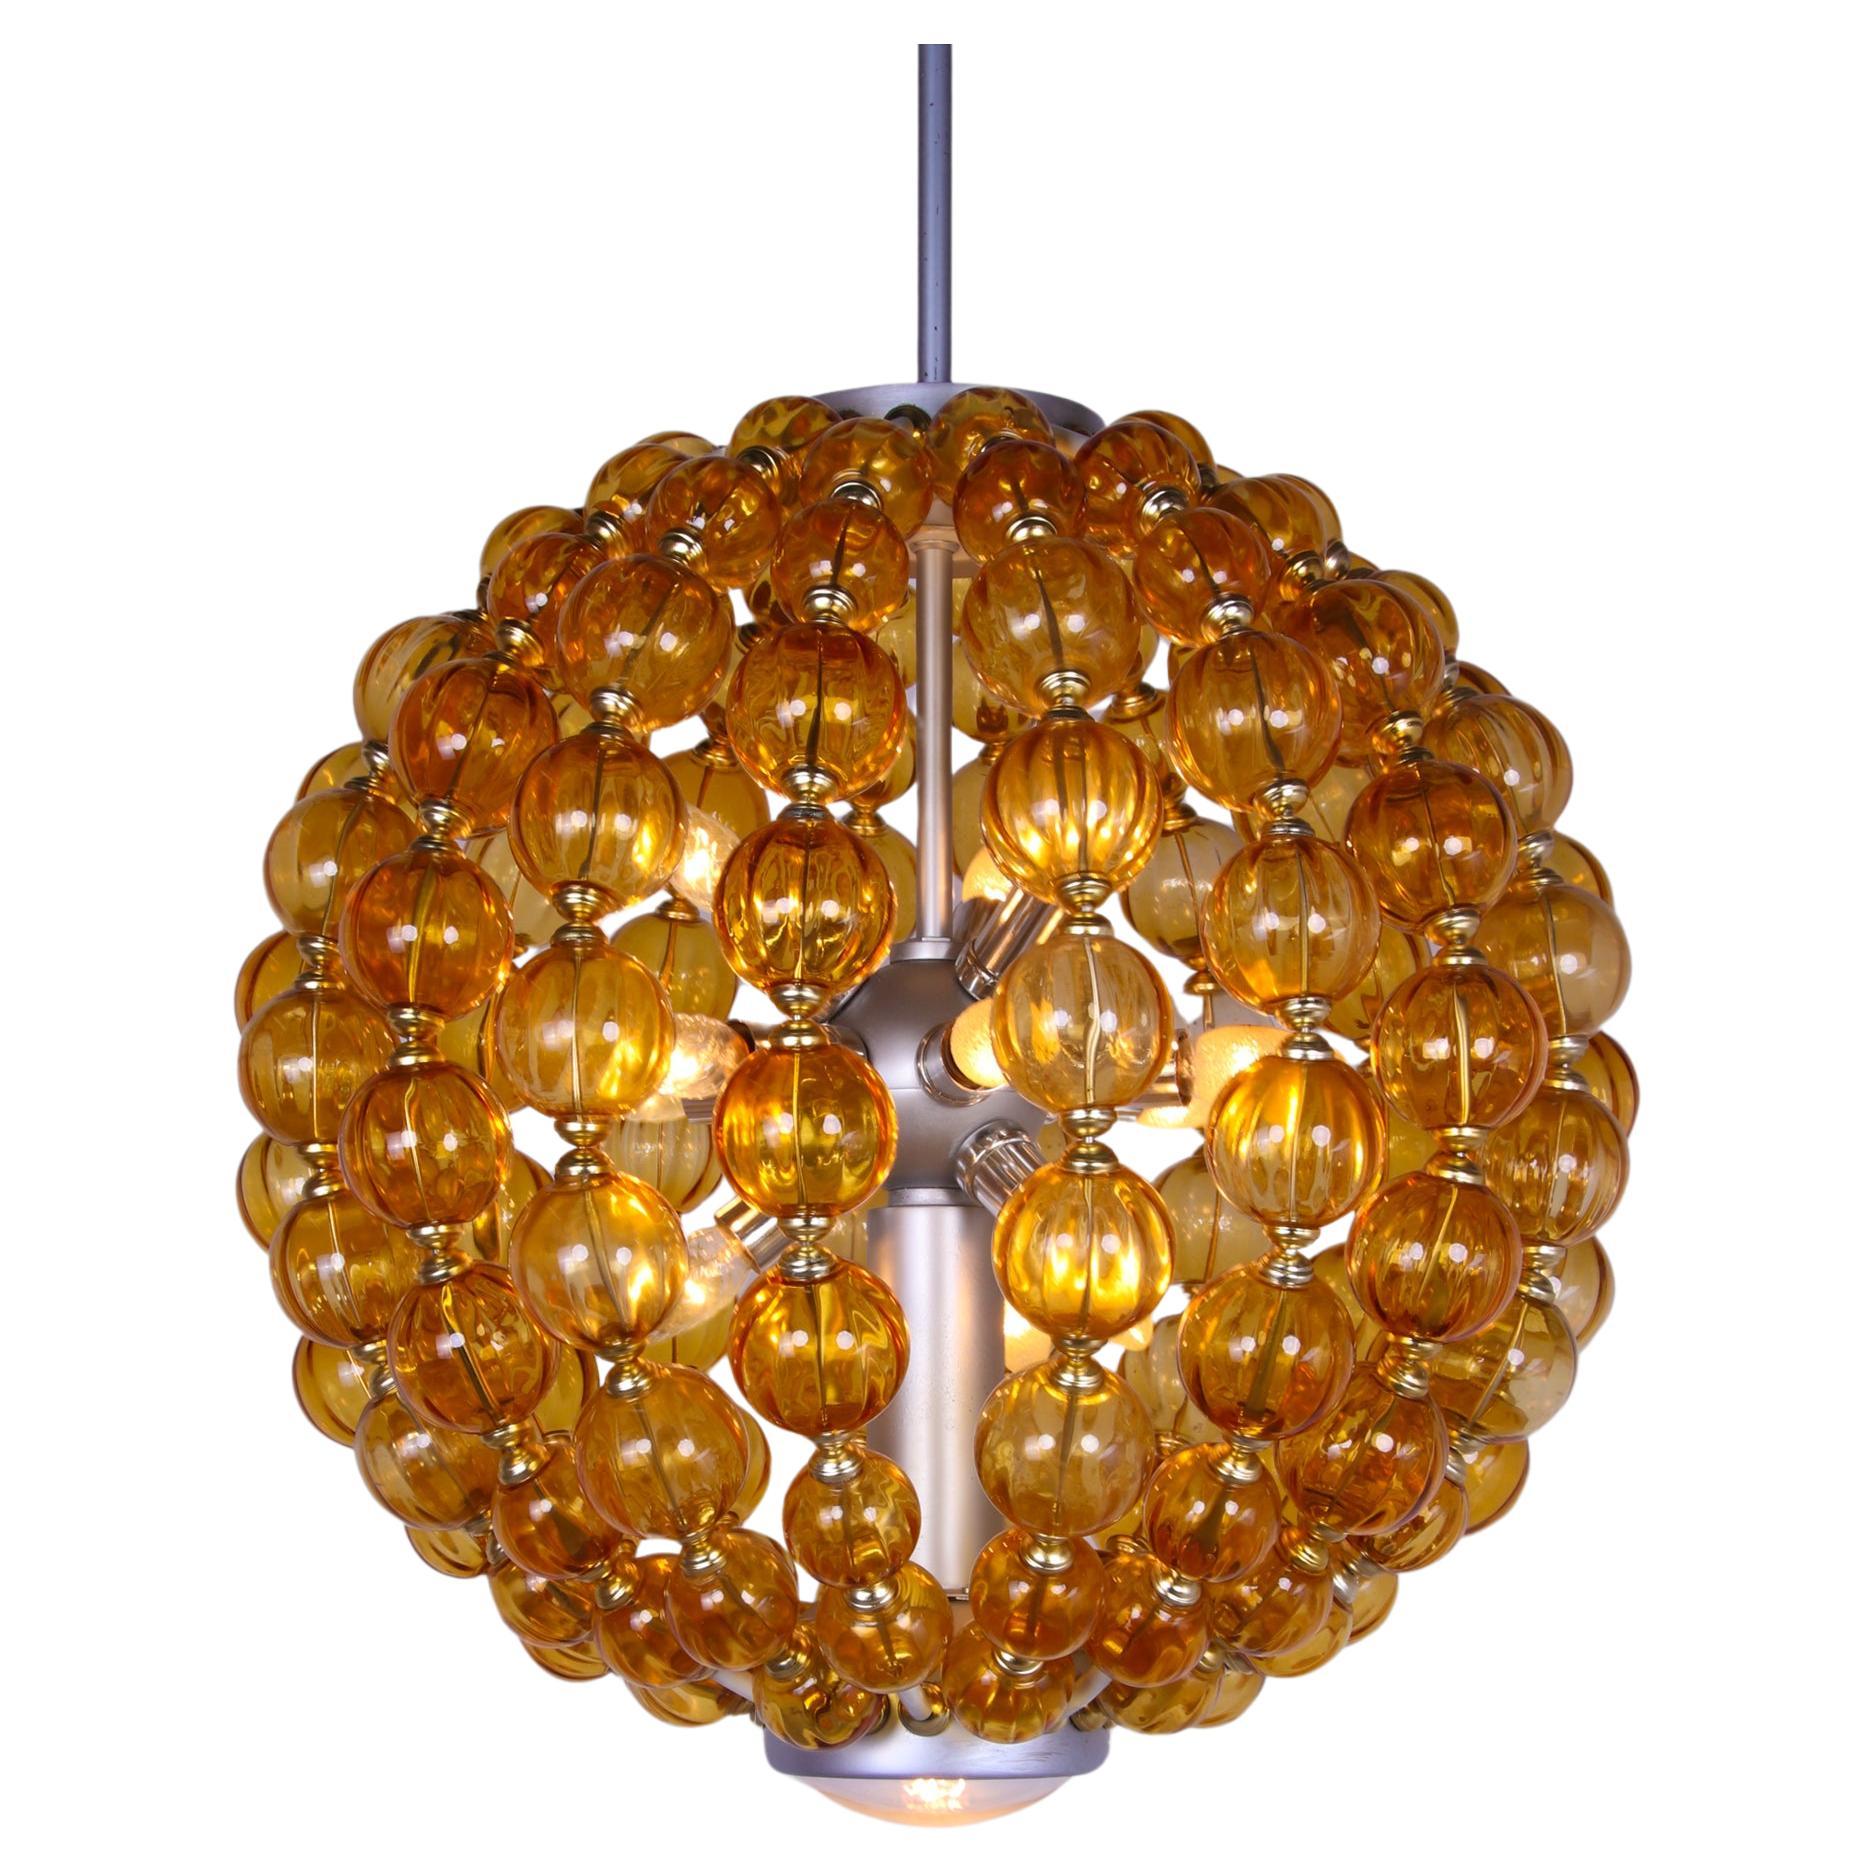 Spectaculaire lustre de salle de bal à 13 lumières de VEB Leuchtenbau Leipzig, Allemagne, avec des boules en verre ambré soufflé à la main sur un cadre en métal. 

Ce lustre impressionnant a été fabriqué en Allemagne de l'Est dans les années 1960.